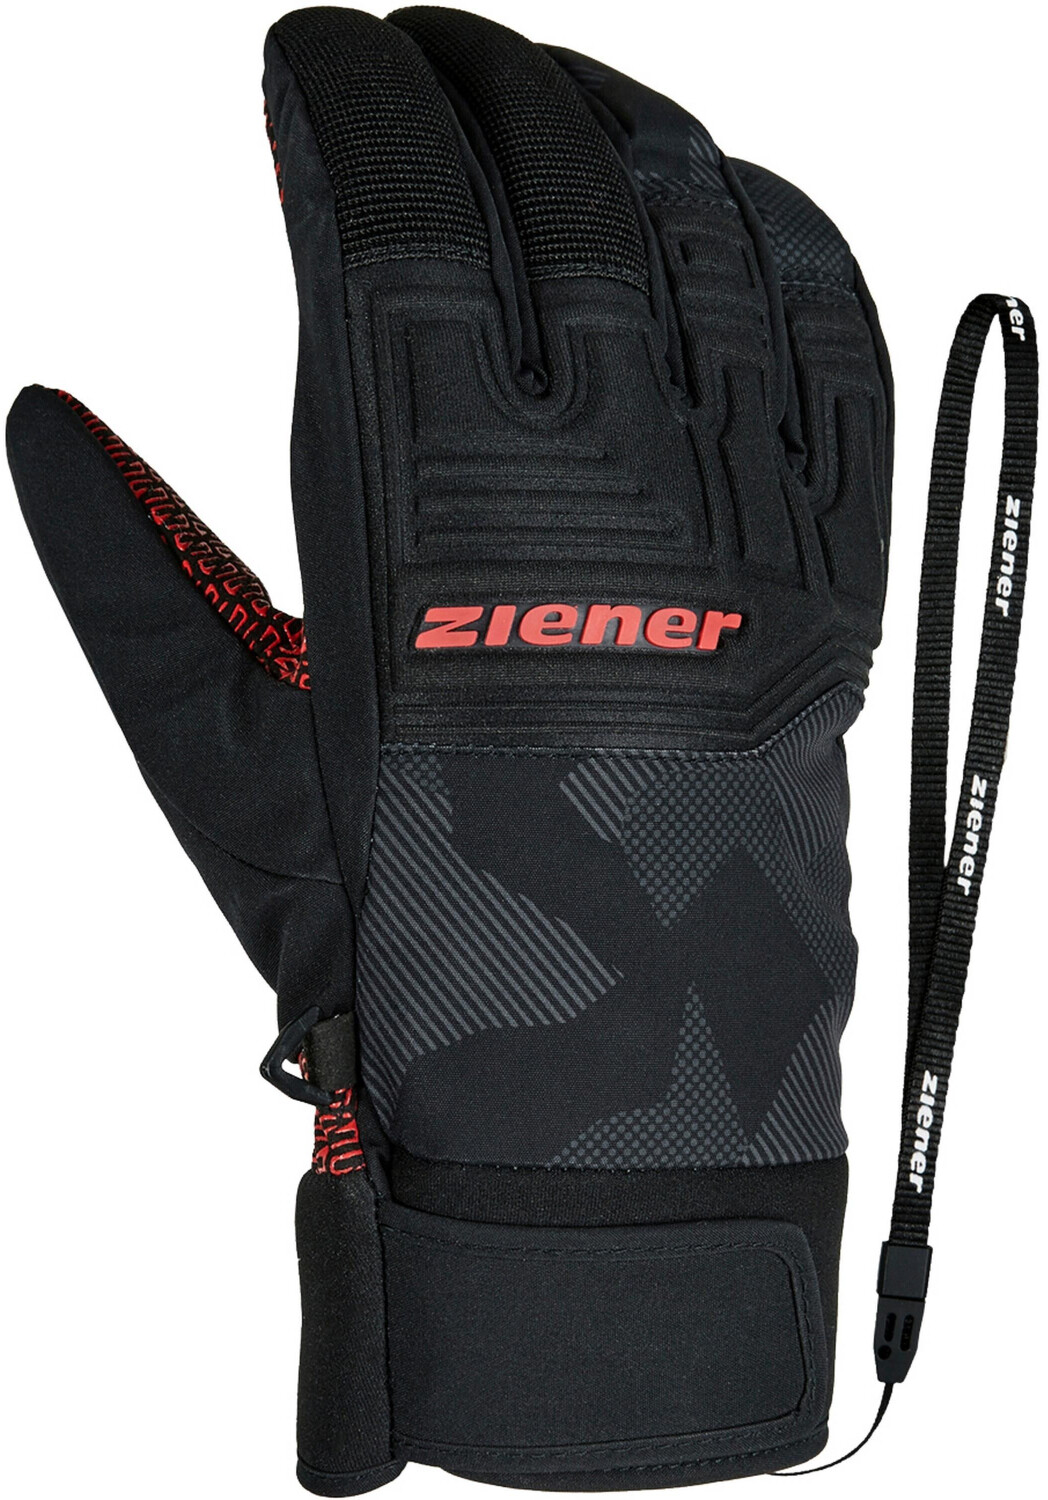 Ziener Garim AS Glove Ski ab Alpine | € 39,99 bei Preisvergleich